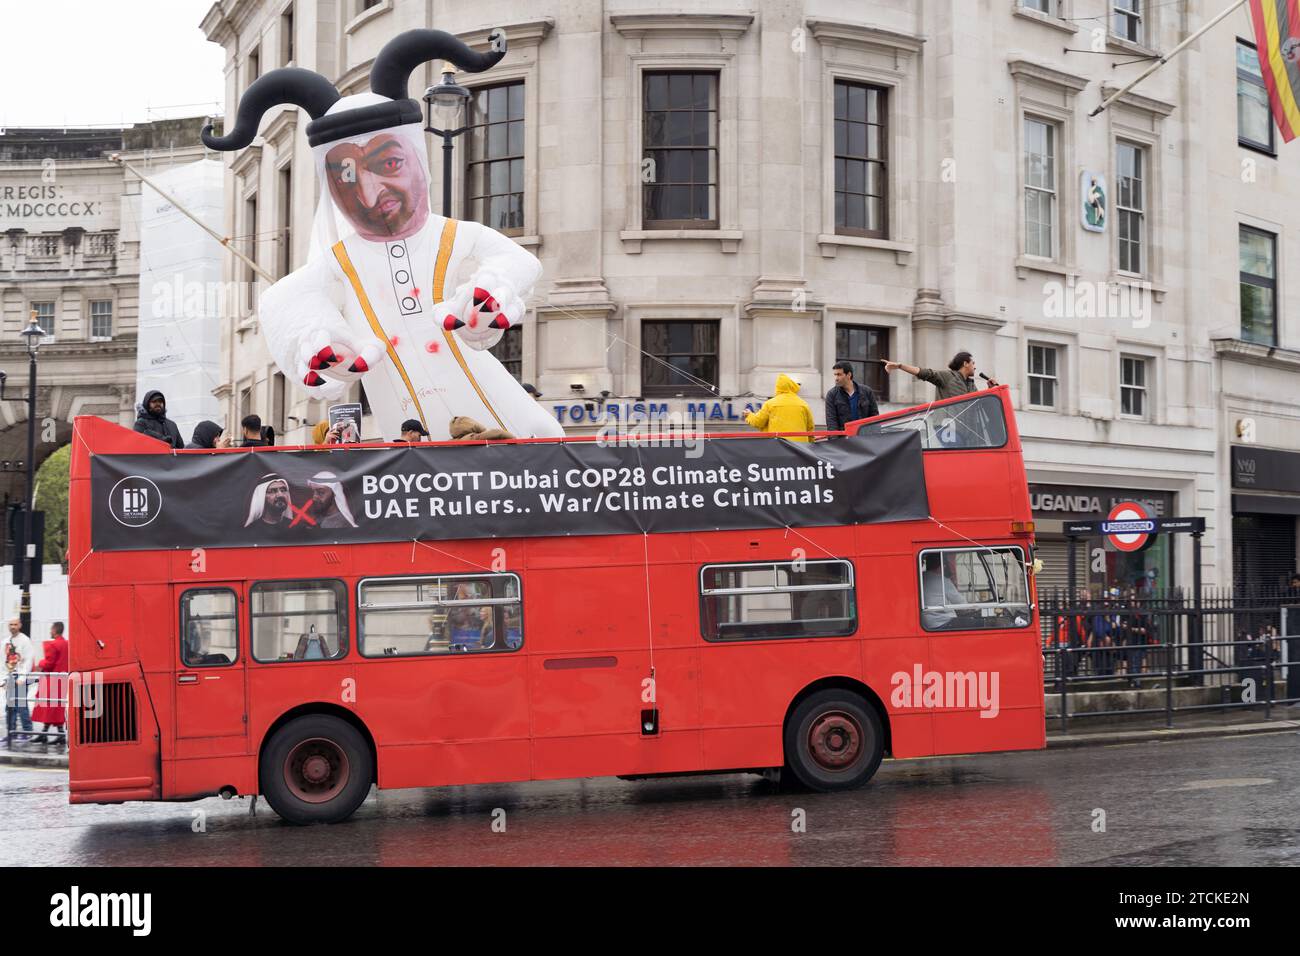 Boicottare Dubai COP28 vertice sul clima governanti degli Emirati Arabi Uniti, il banner criminale di guerra/clima si trova sul pannello laterale del bus scoperto che gira per Londra Street UK Foto Stock